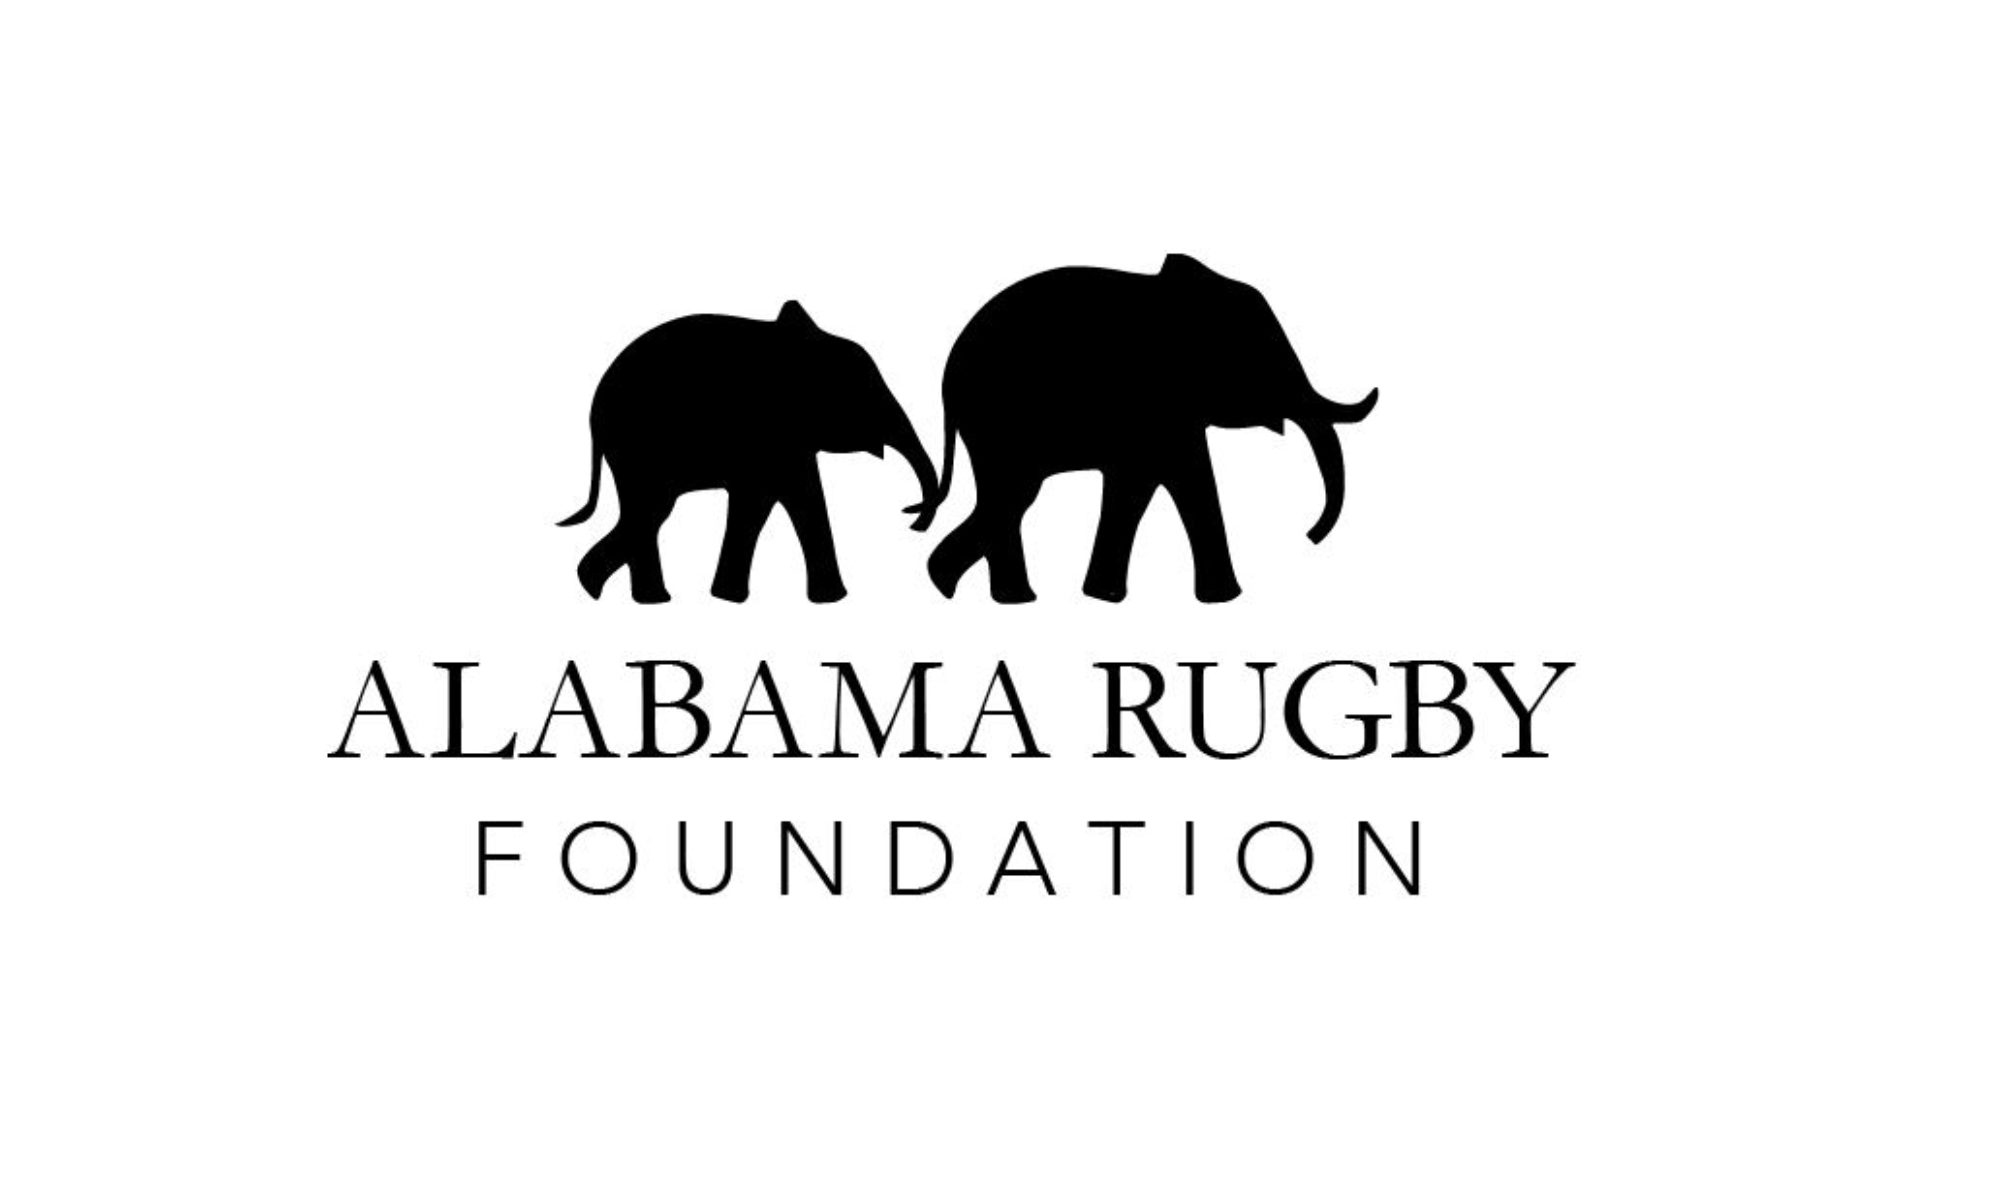 Alabama Rugby Foundation